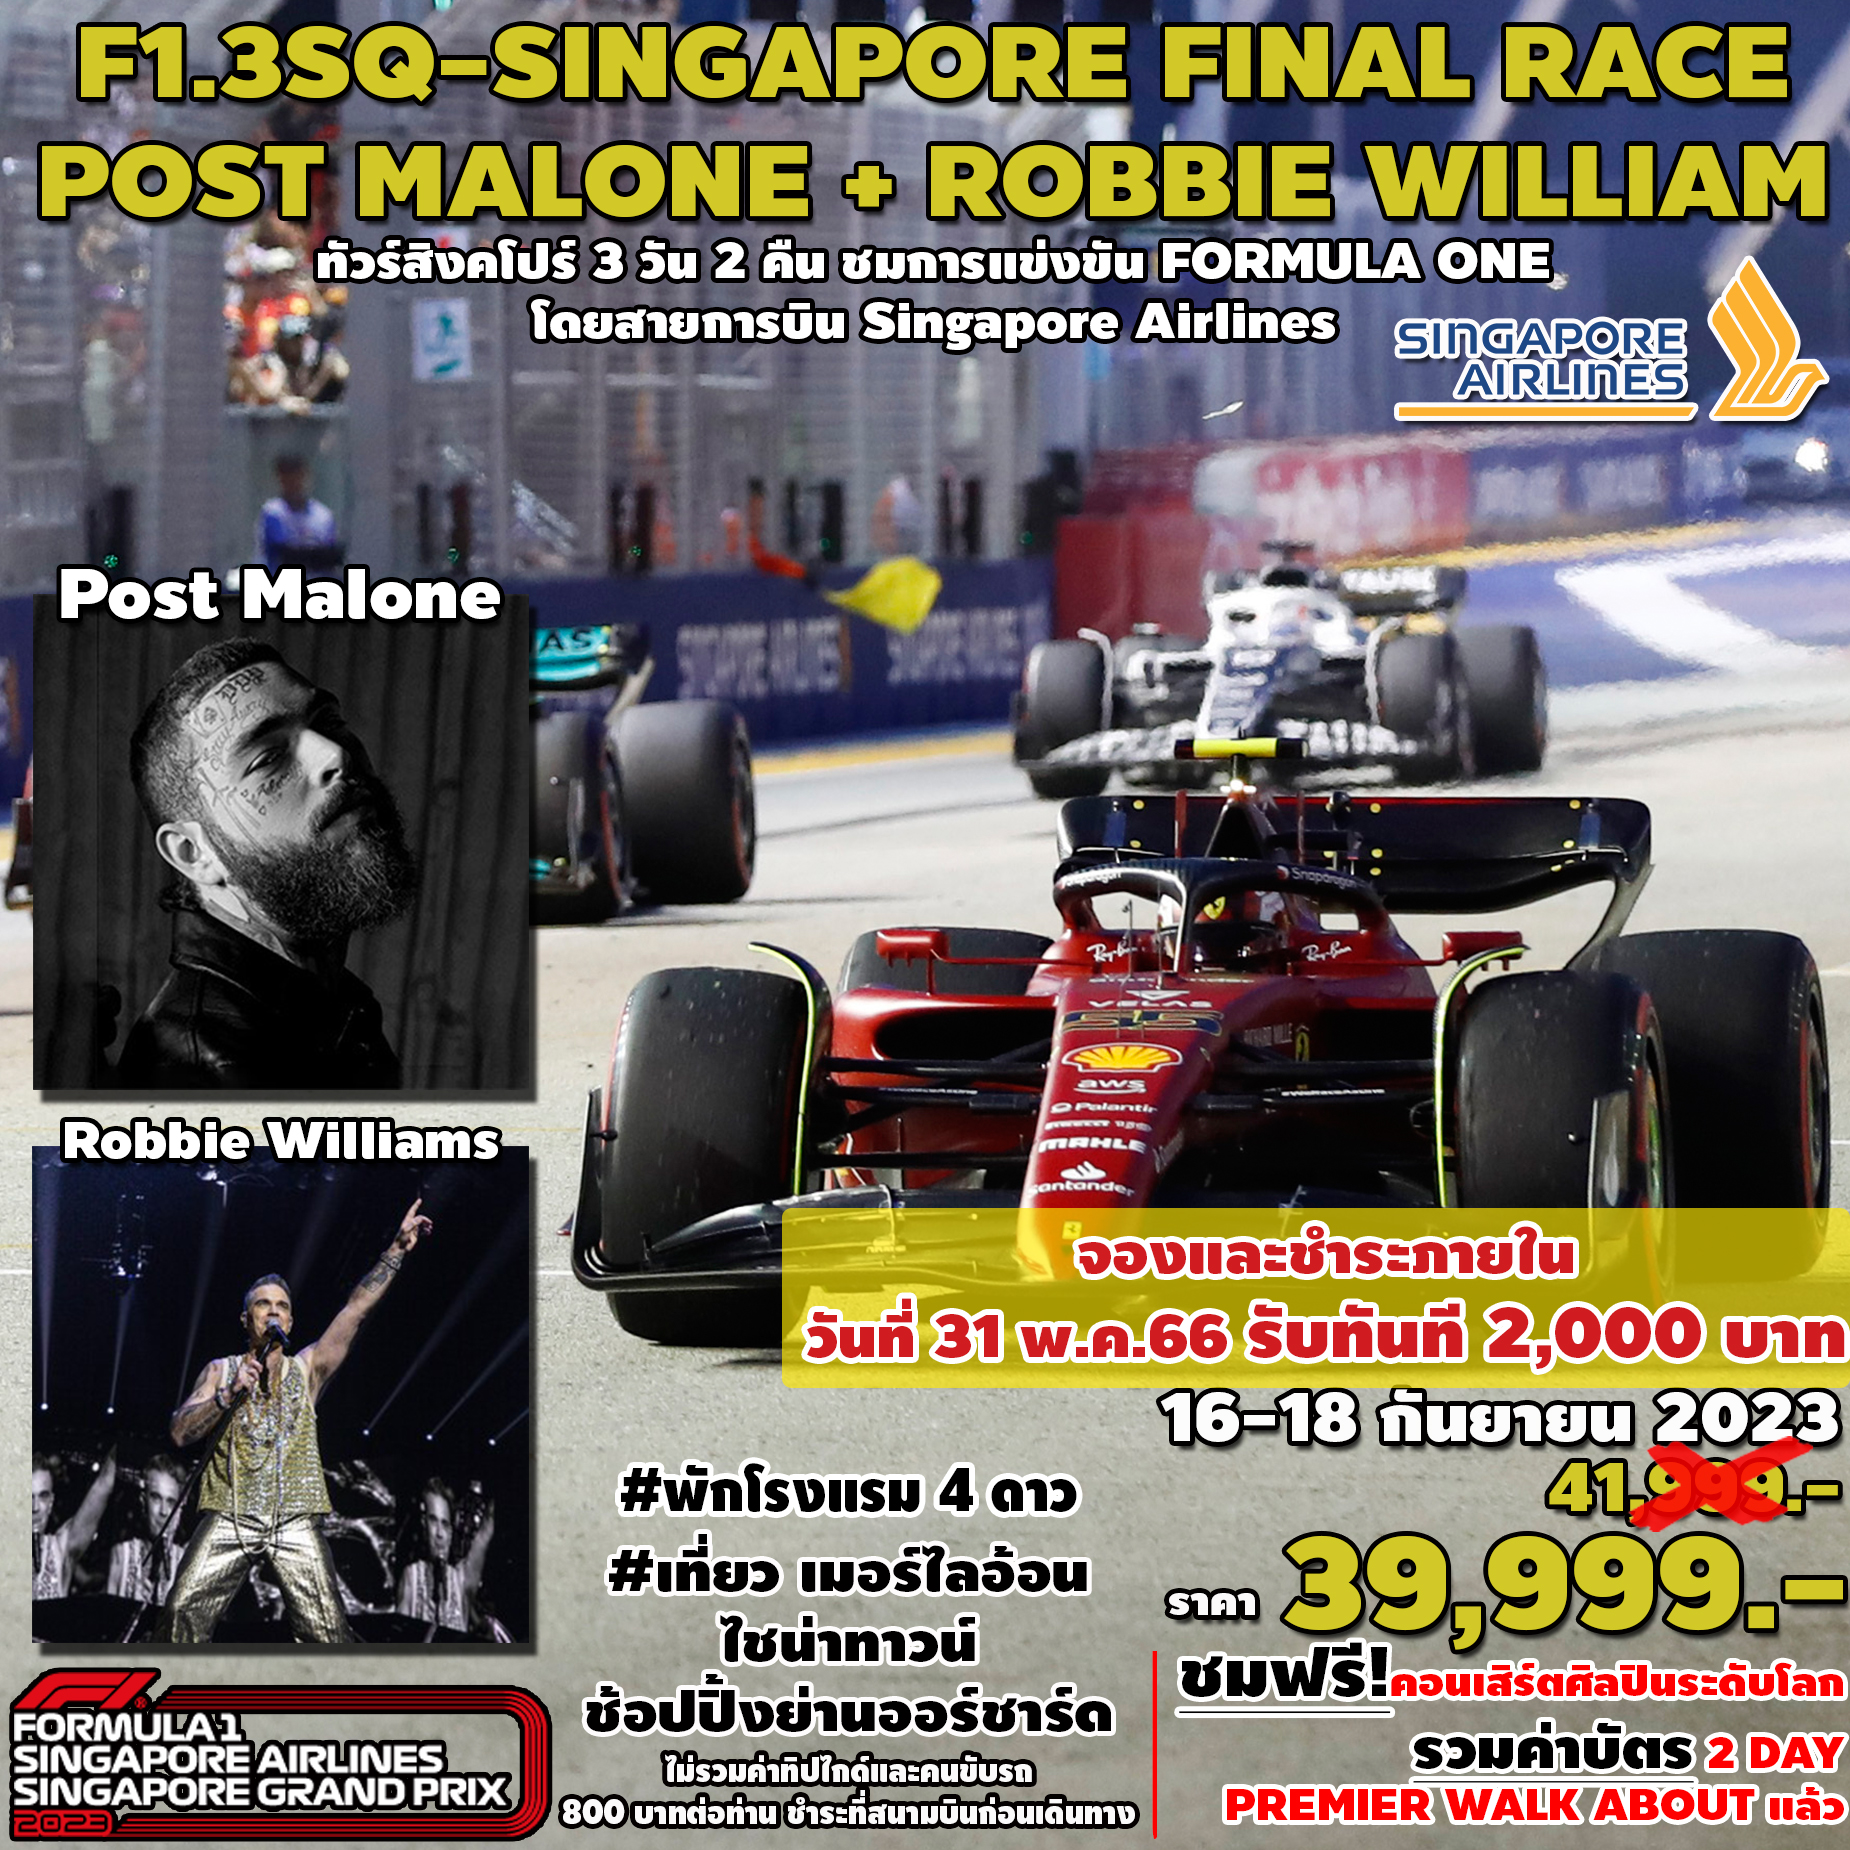 SPHZ- F1.3SQ FINAL RACE+POST MALONE+ROBBIE WILLIAM 3D2N